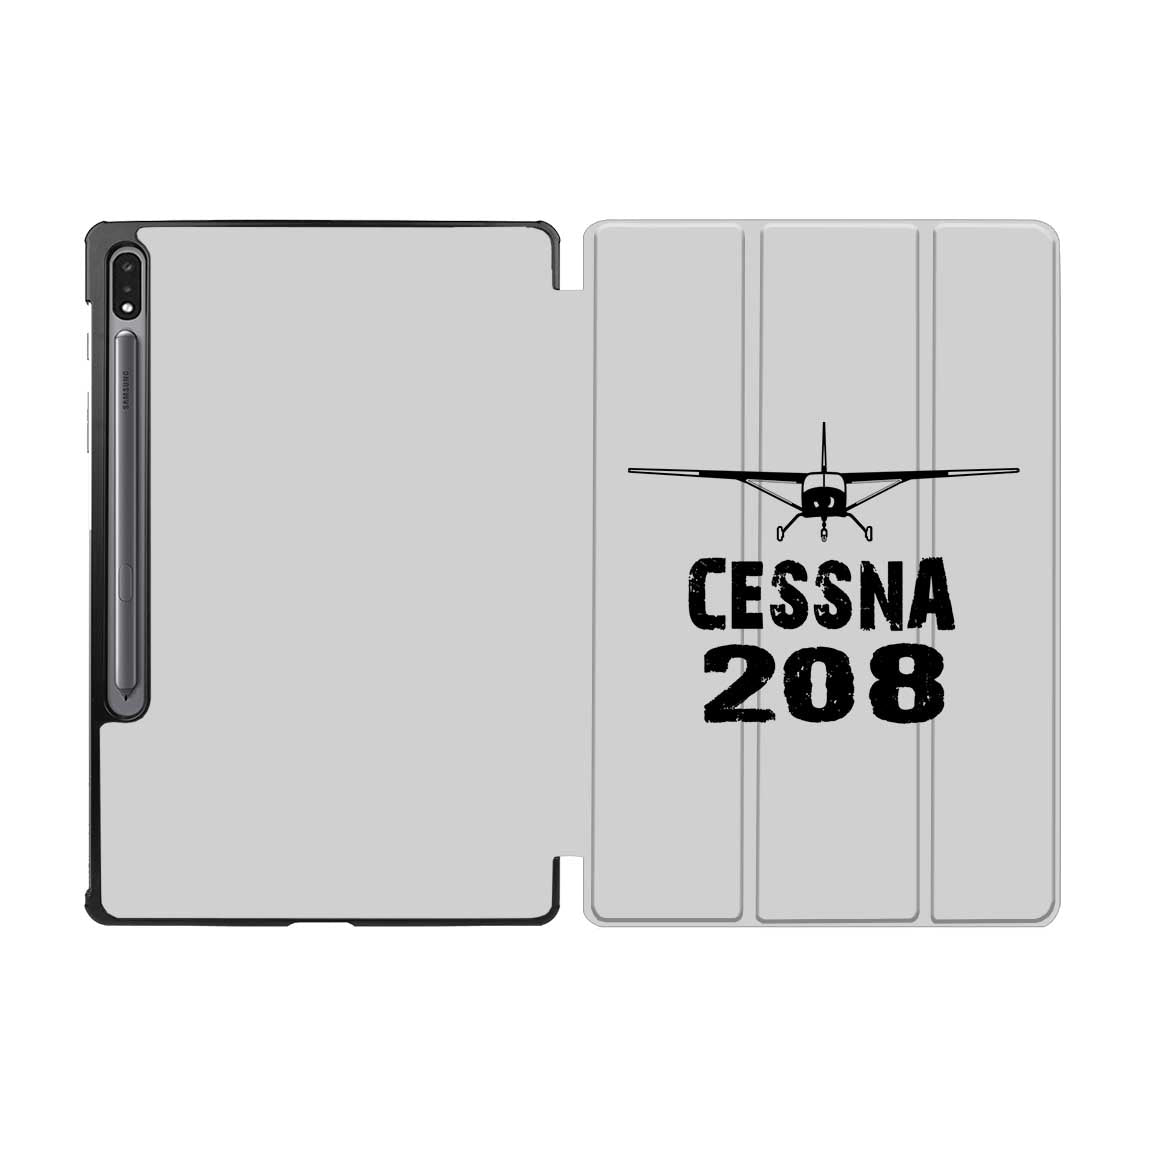 Cessna 208 & Plane Designed Samsung Tablet Cases